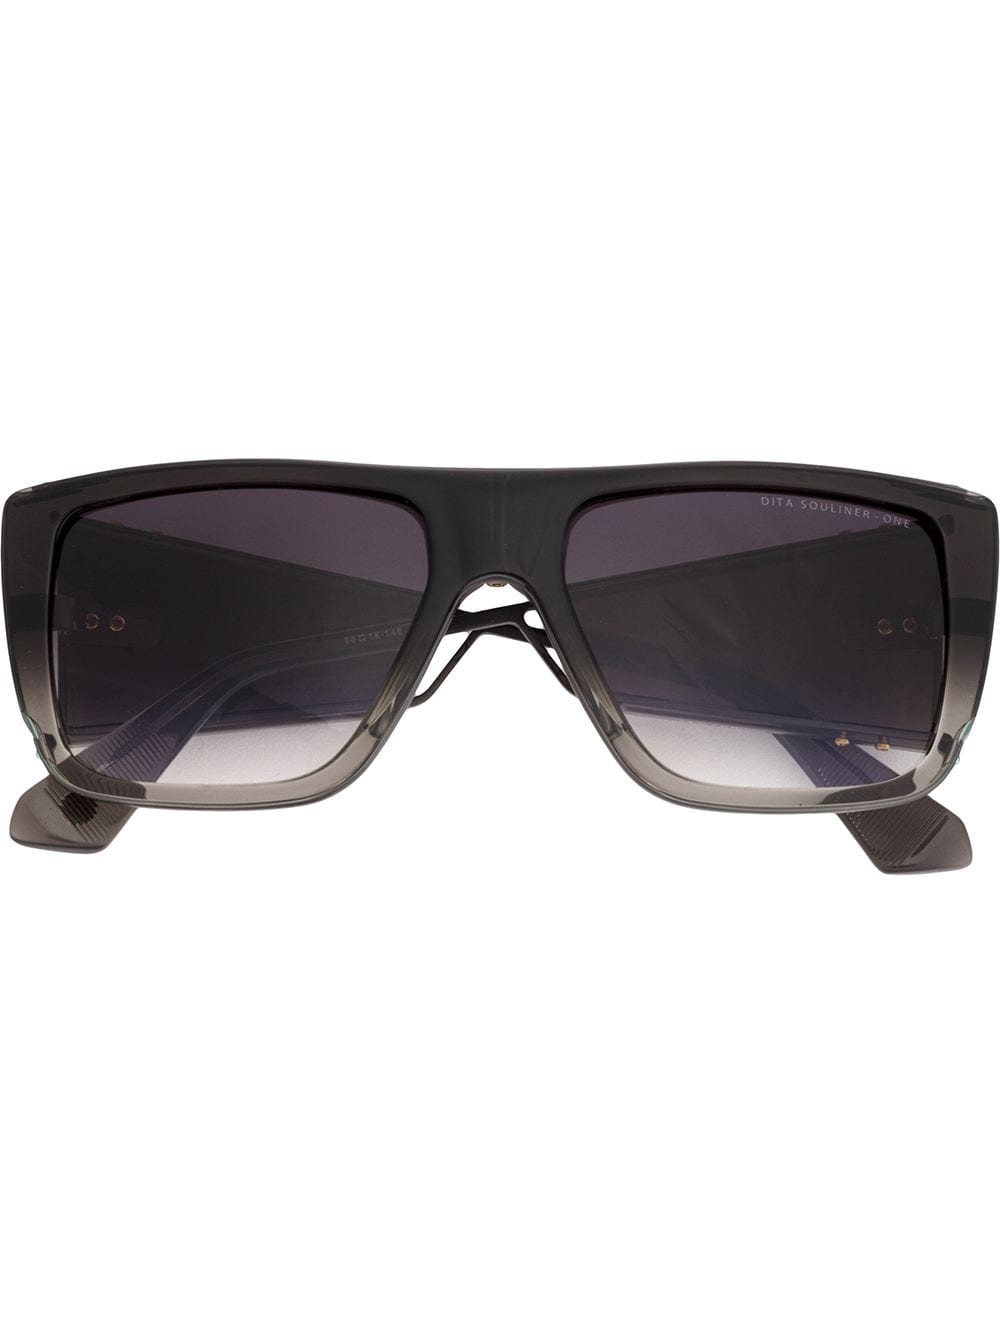 Dita Eyewear Souliner One Sunglasses - 黑色 In Black